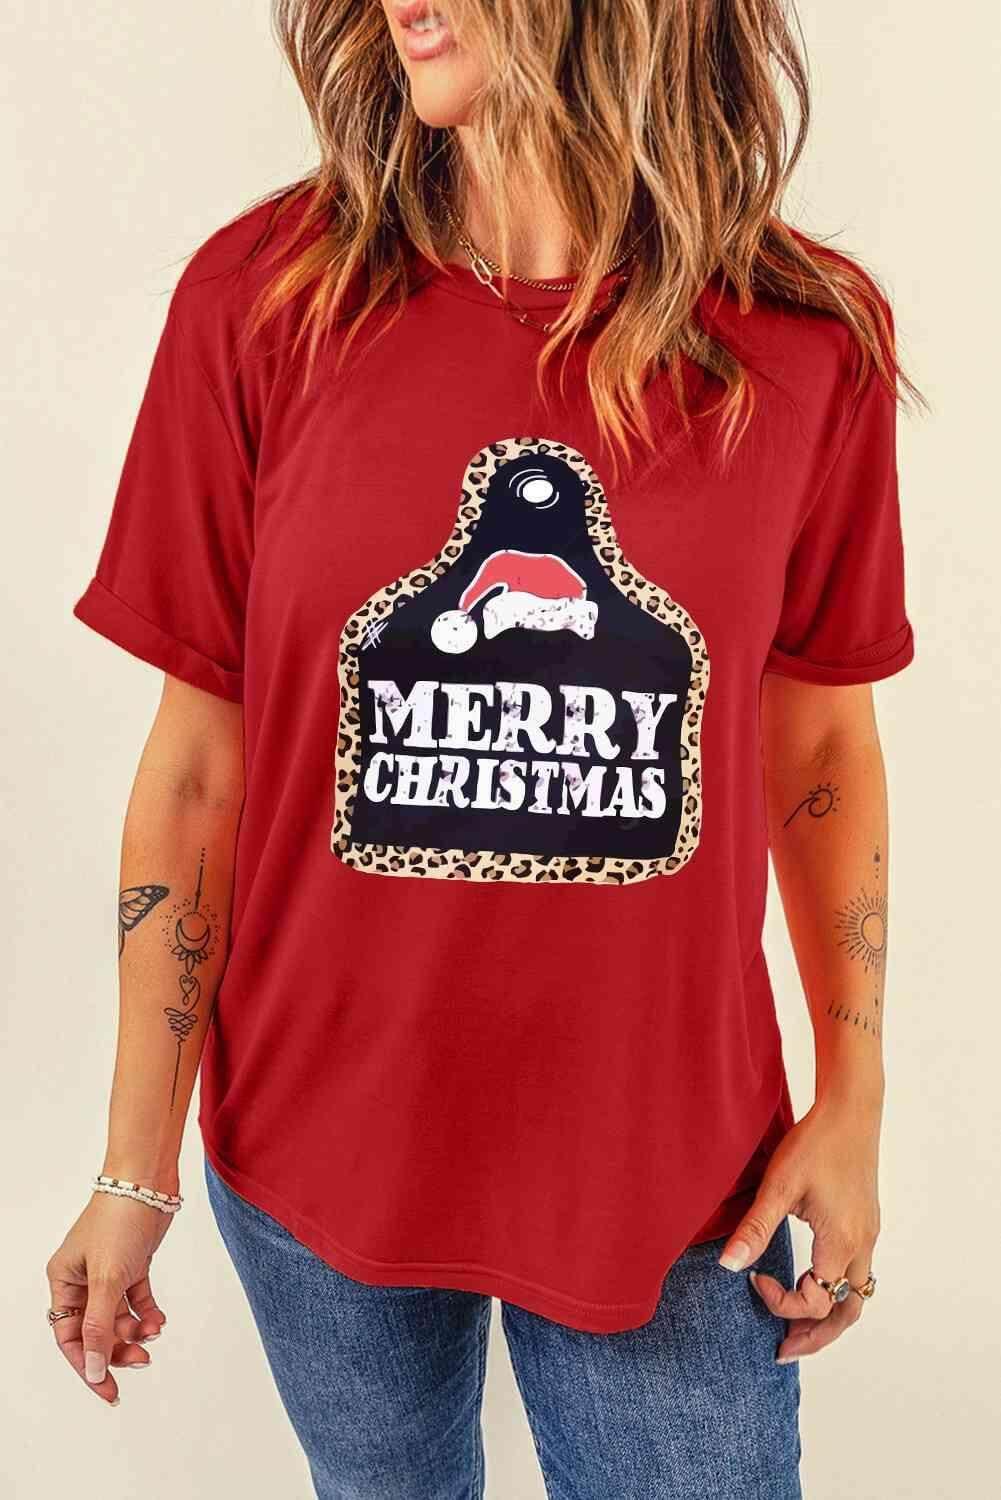 MERRY CHRISTMAS Graphic T-Shirt - Trendociti